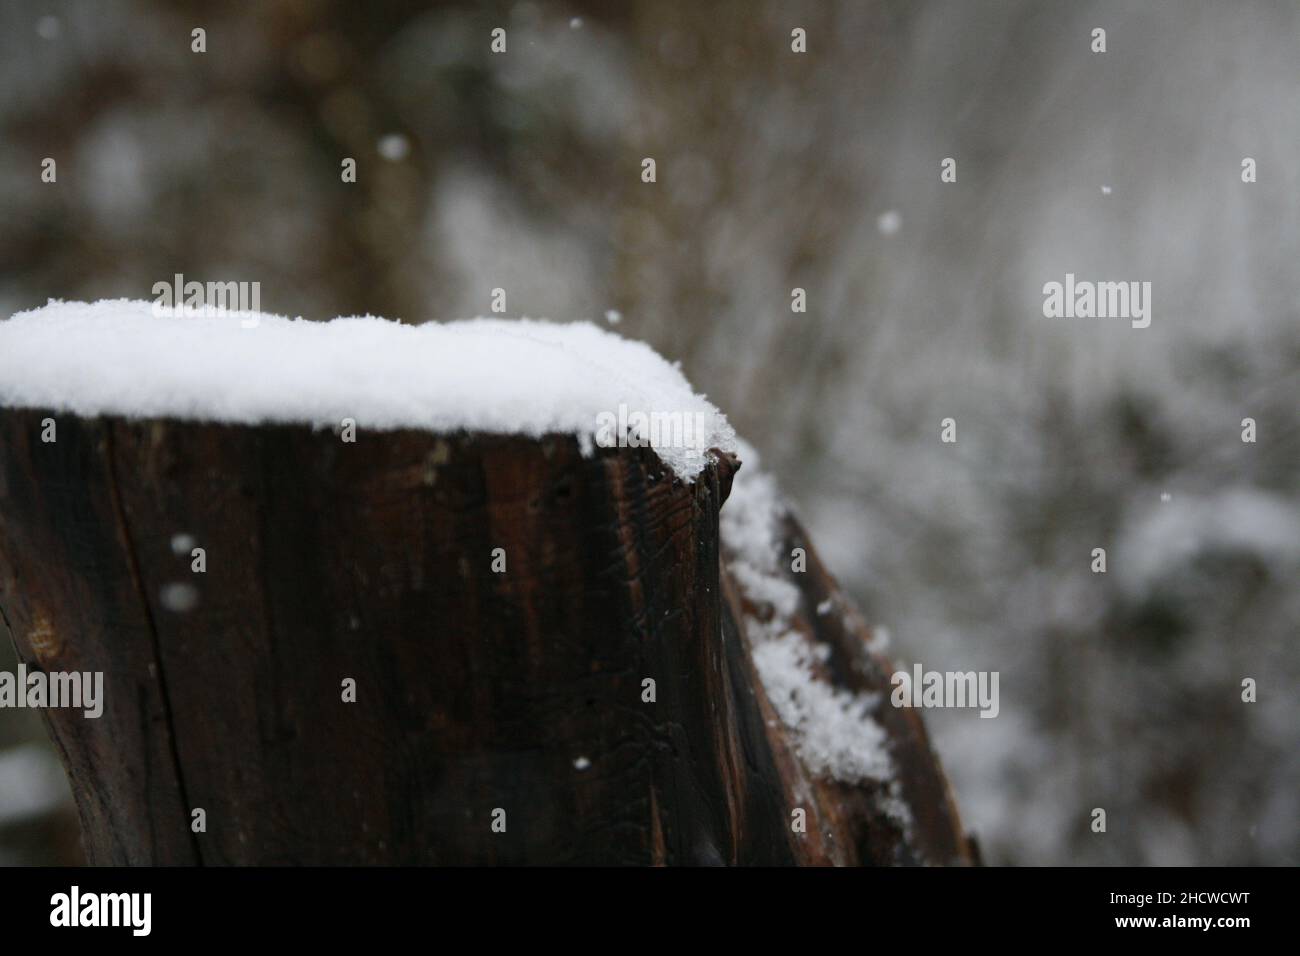 Baumstamm mit Schnee, Hintergrund: Sträucher und herabfallener Schnee Stock Photo